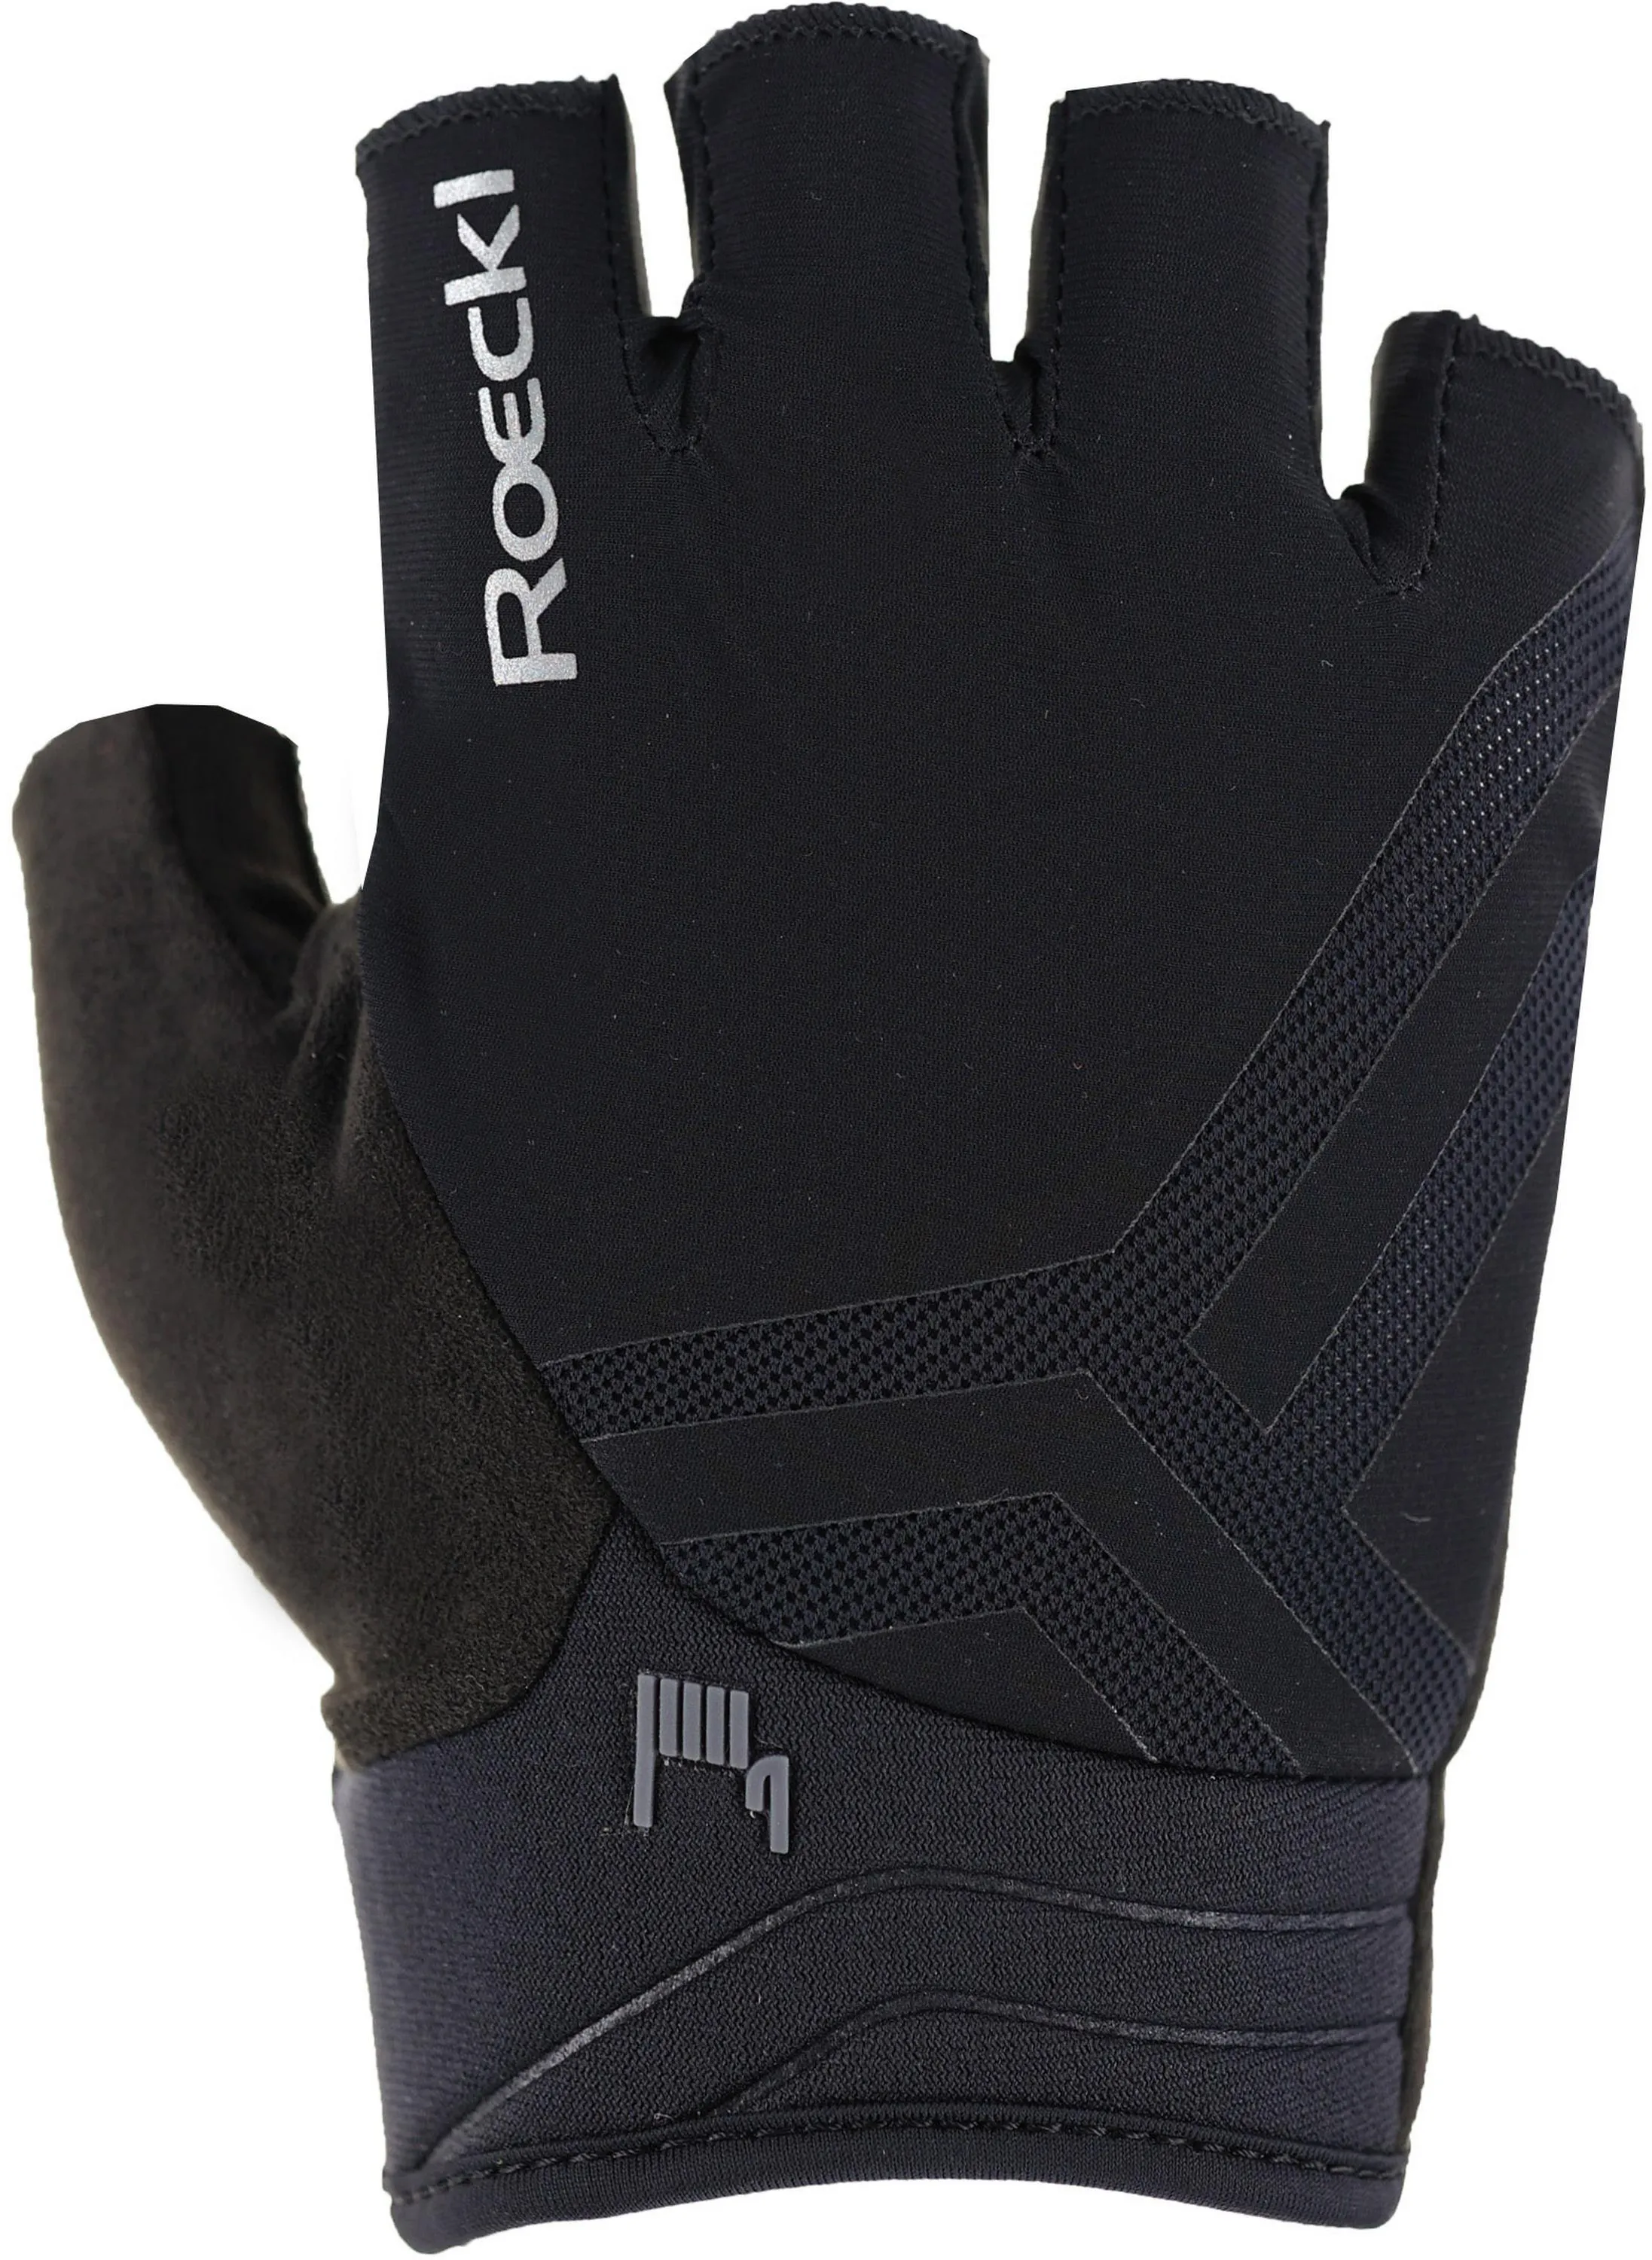 Roeckl Ibarra Handschuh in black, Größe 10 - schwarz